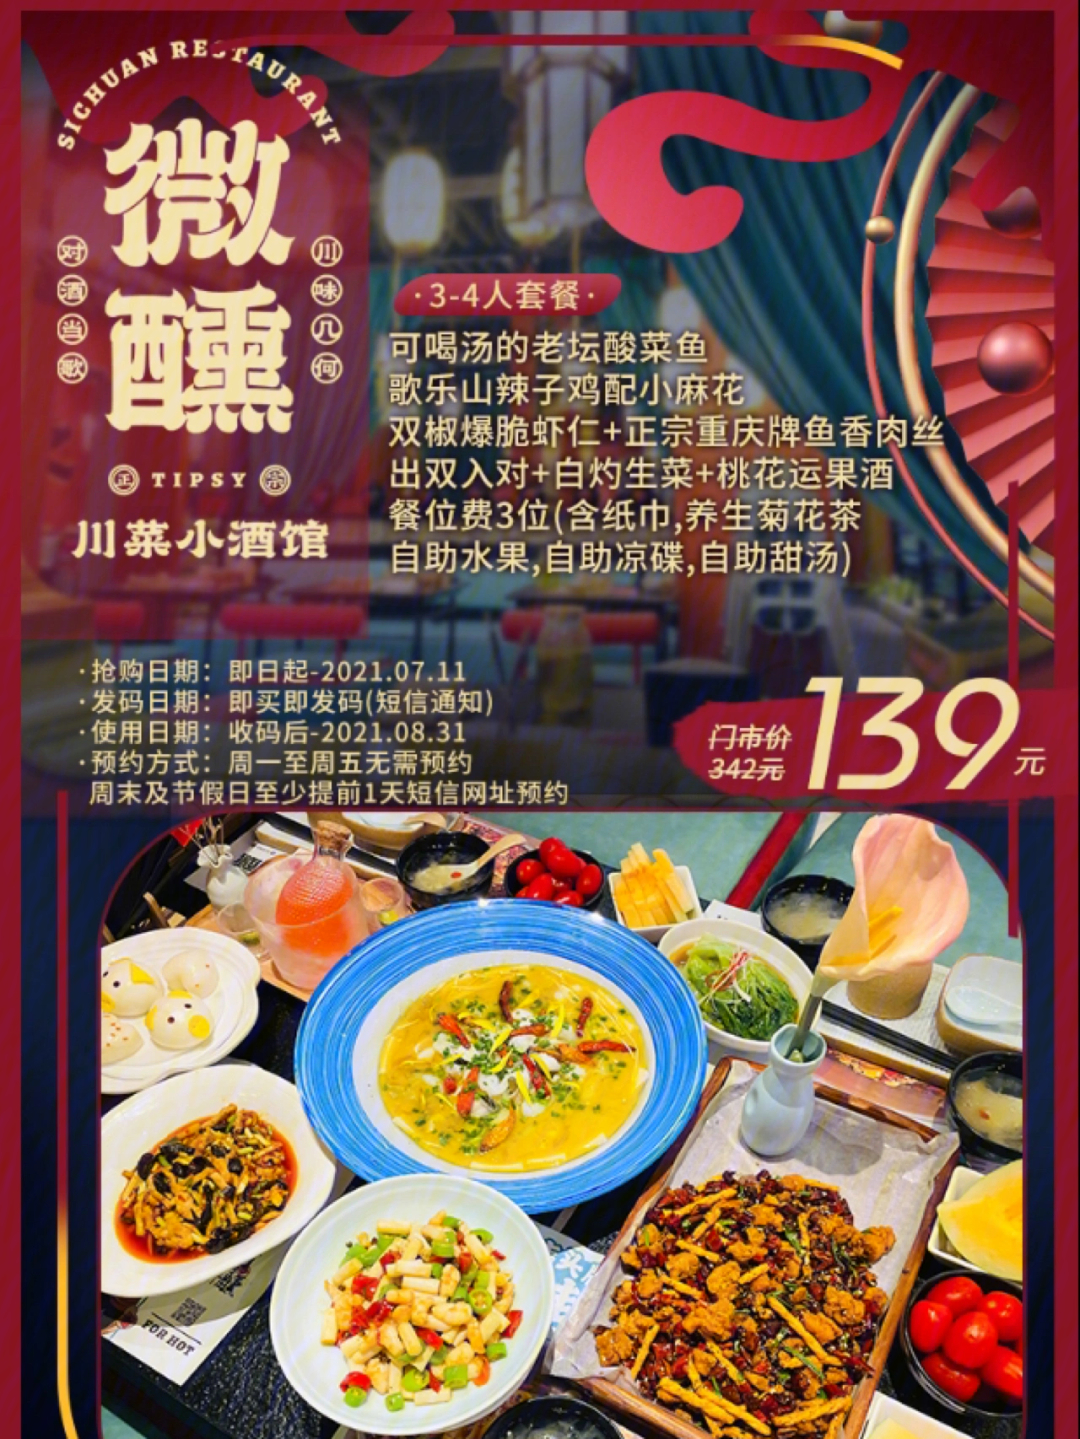 武汉m丨微醺川菜小酒馆丨139元套餐